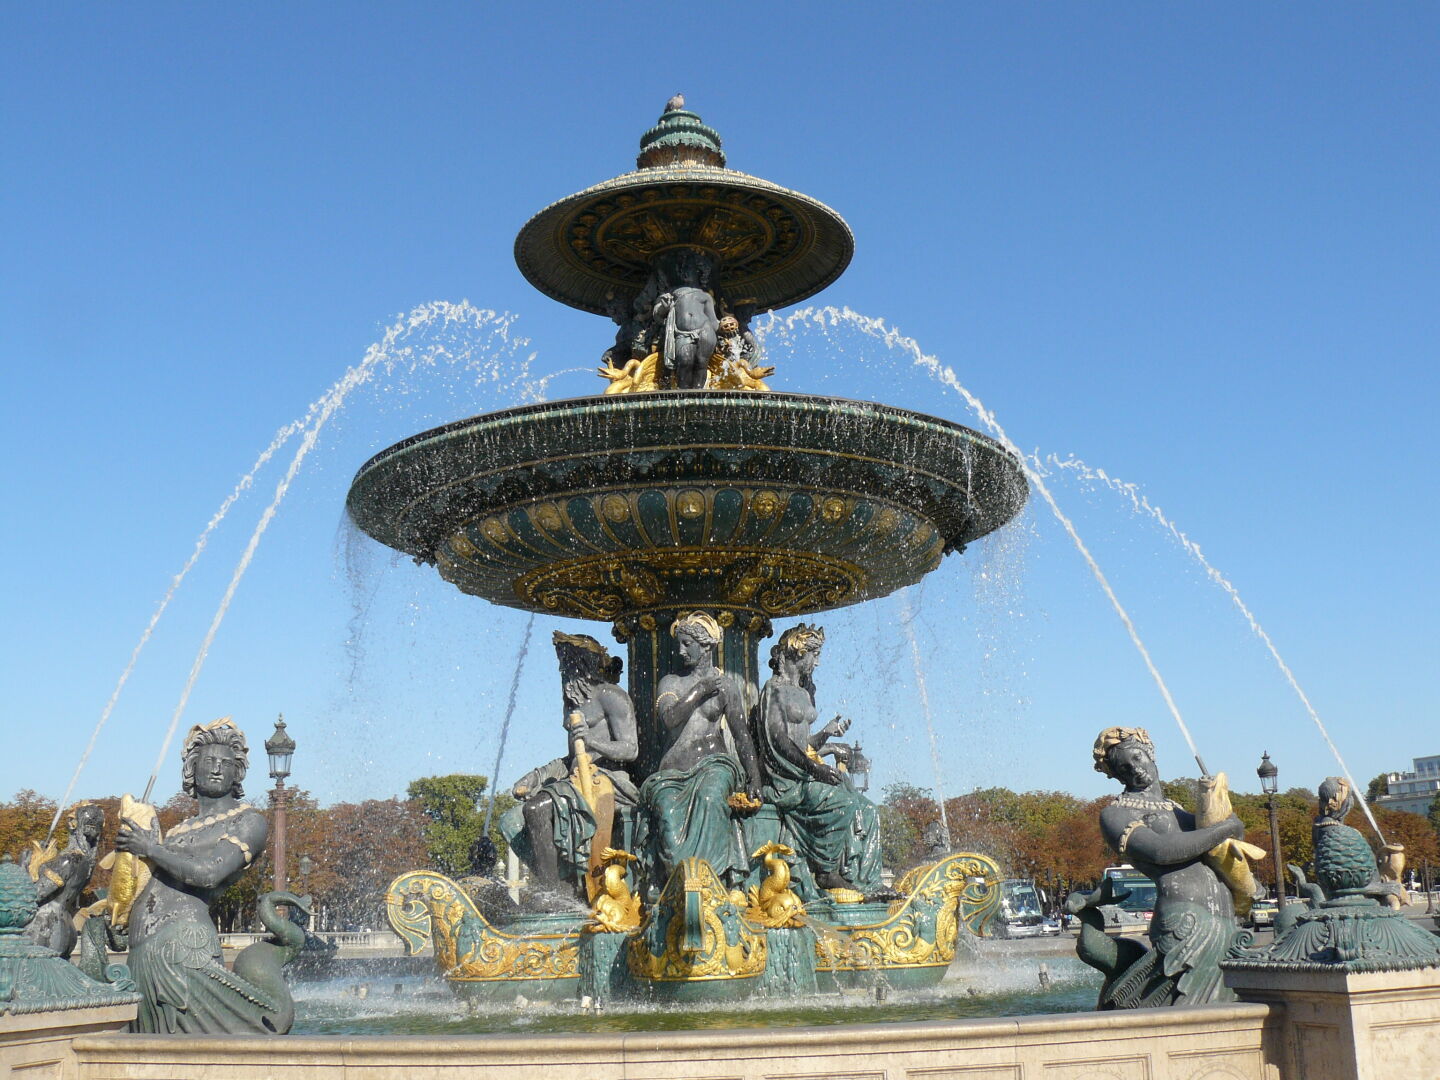 Fountain on the Place de la Concorde.